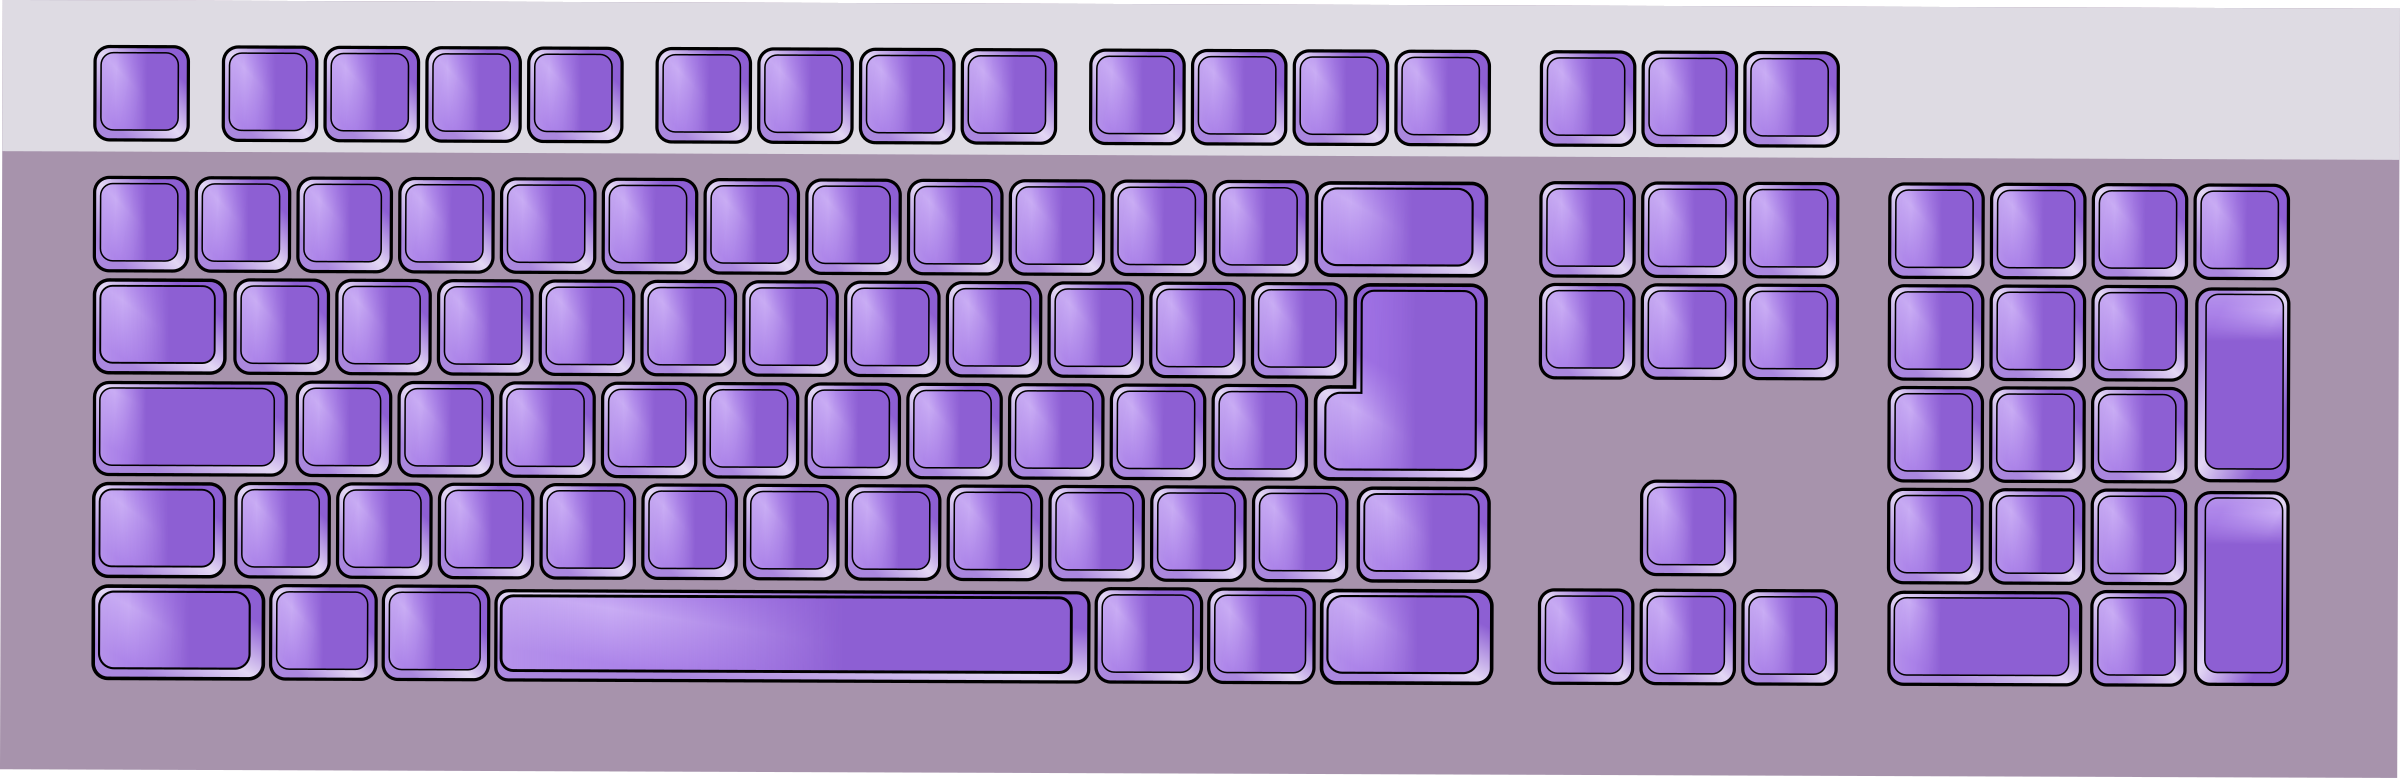 clipart keyboard - photo #30